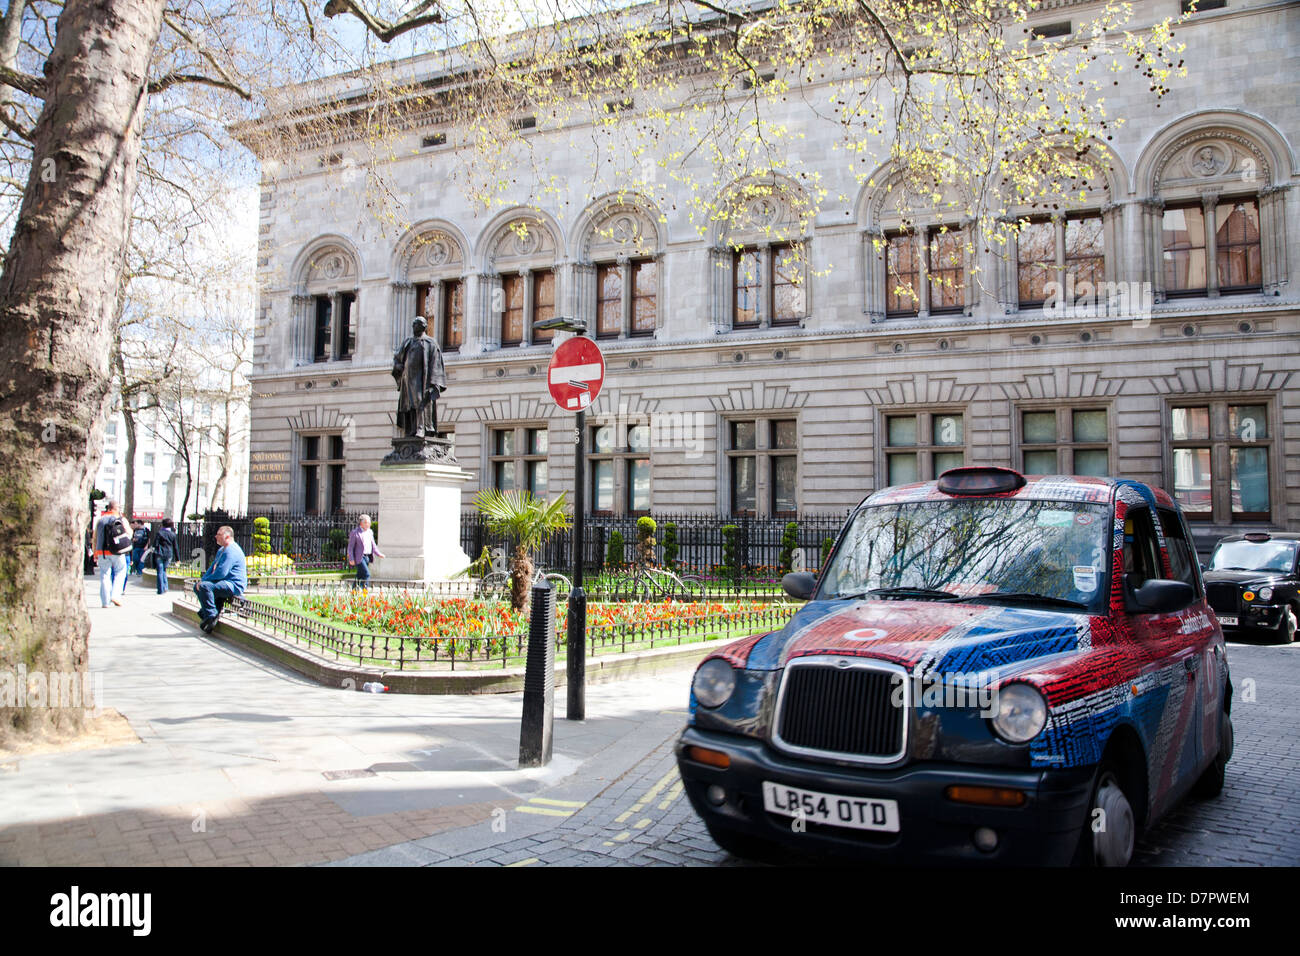 Taxi Union Jack à l'extérieur de la région de Potrait Gallery, West End, Londres, Angleterre, Royaume-Uni Banque D'Images